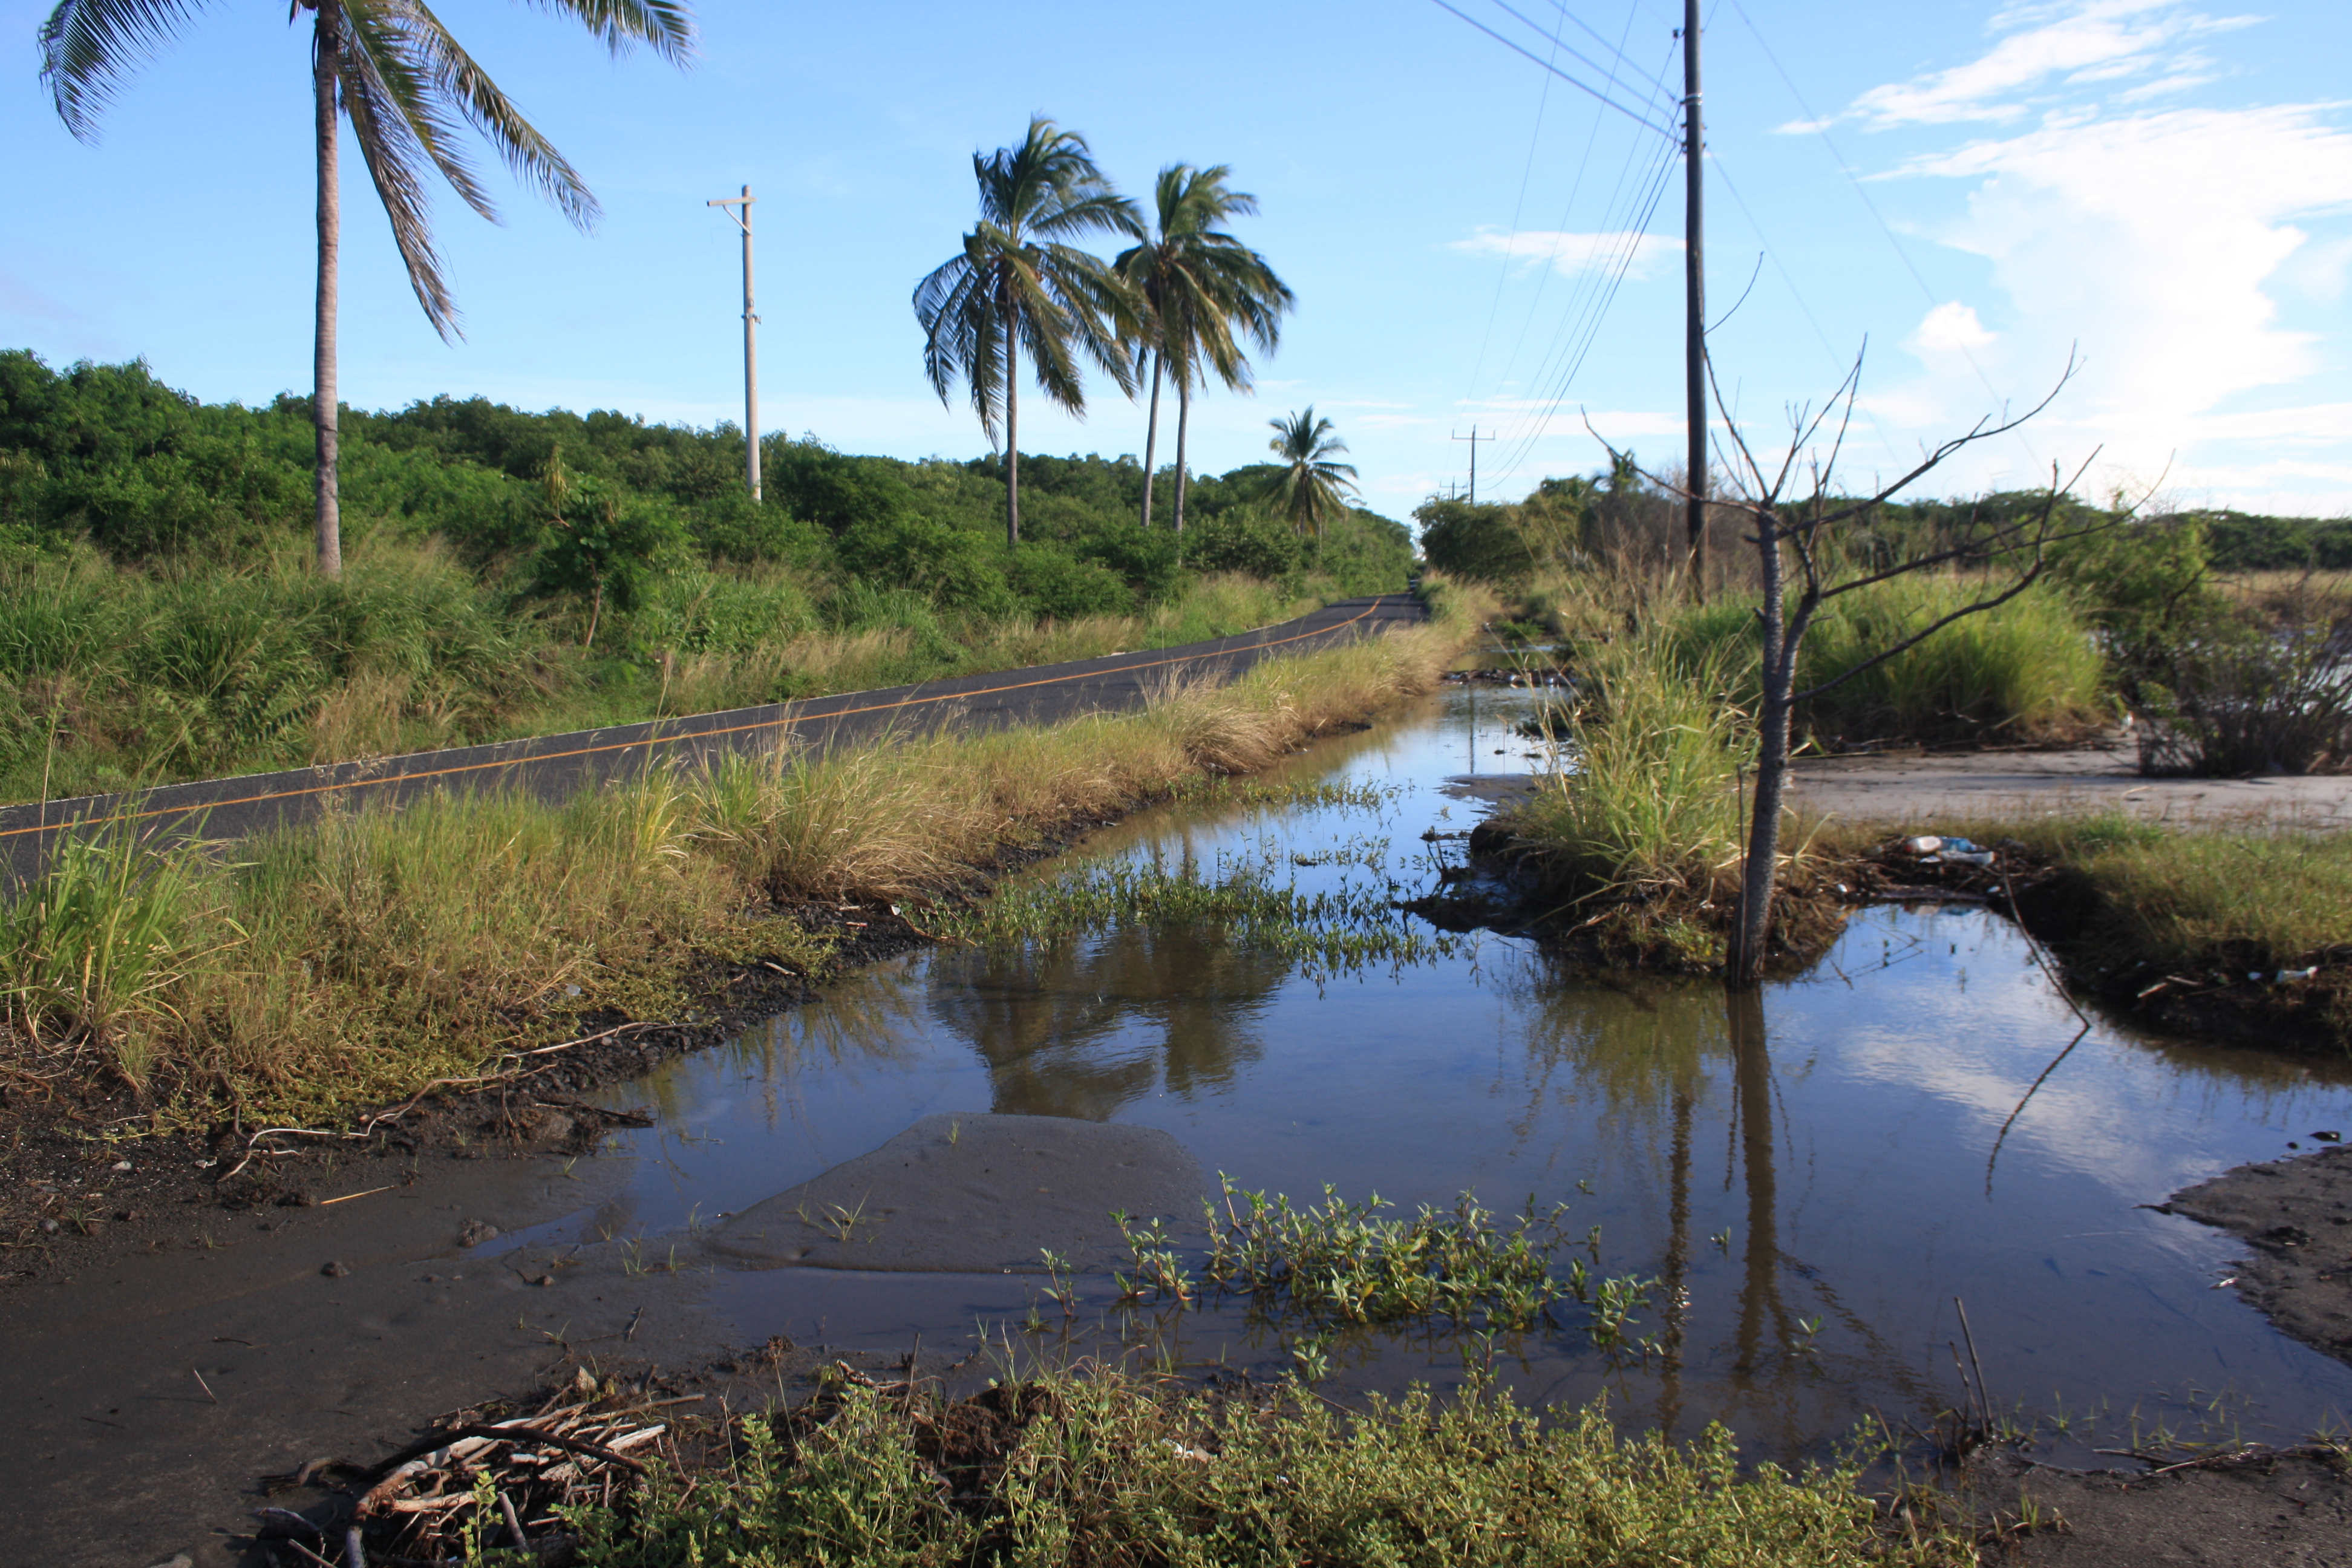 Marejadas están afectando carretera de Punta Chame | Critica - Crítica